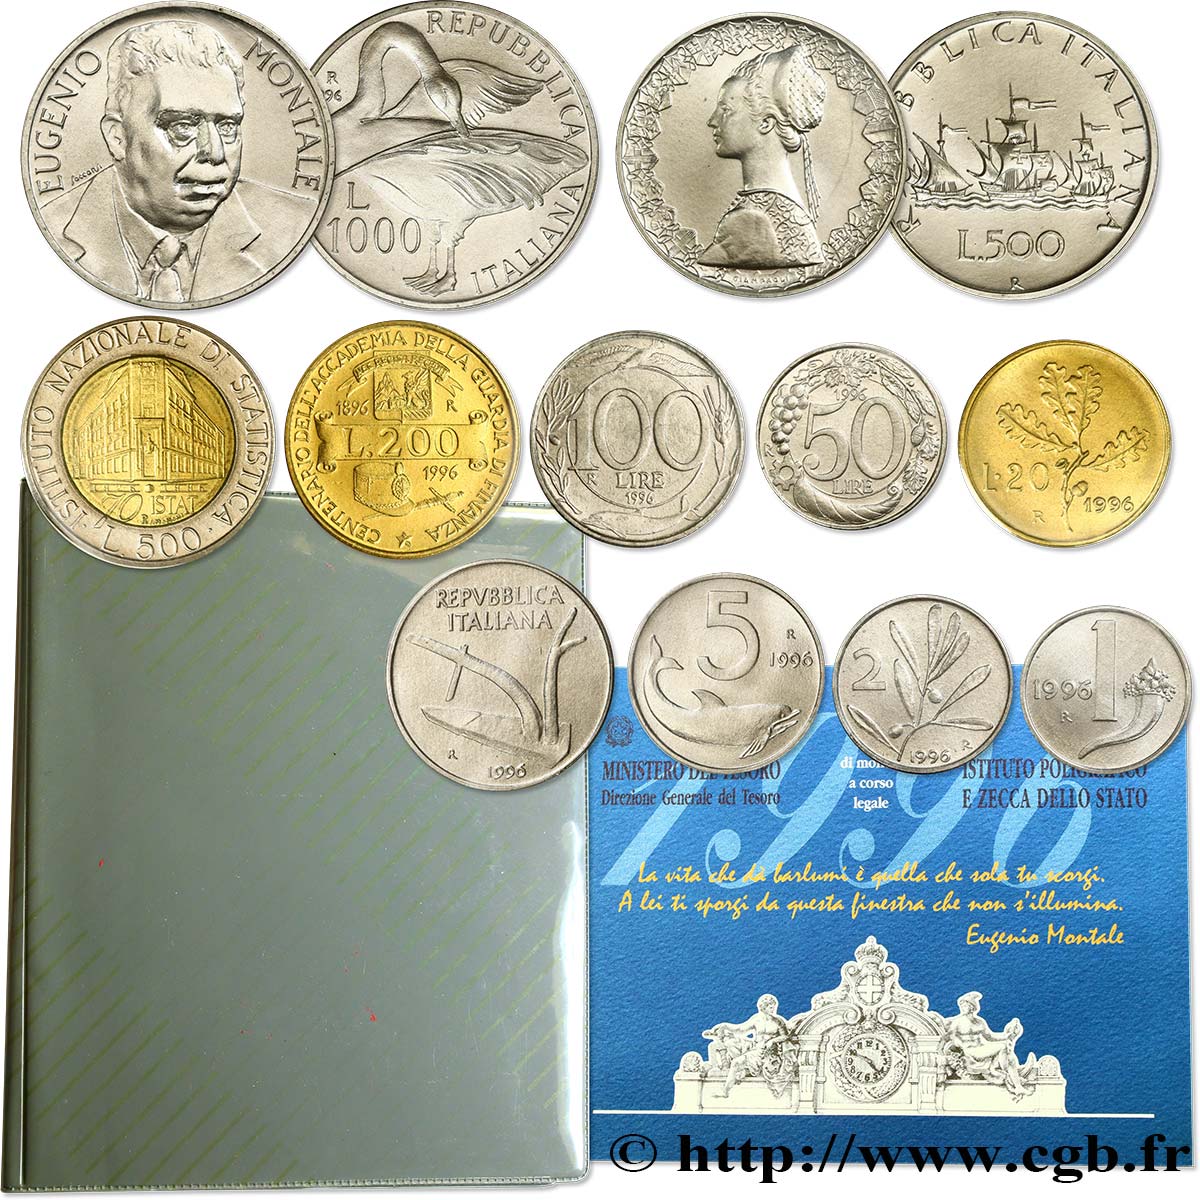 ITALY Série de 11 Monnaies Eugenio Montale 1996 Rome - R MS 